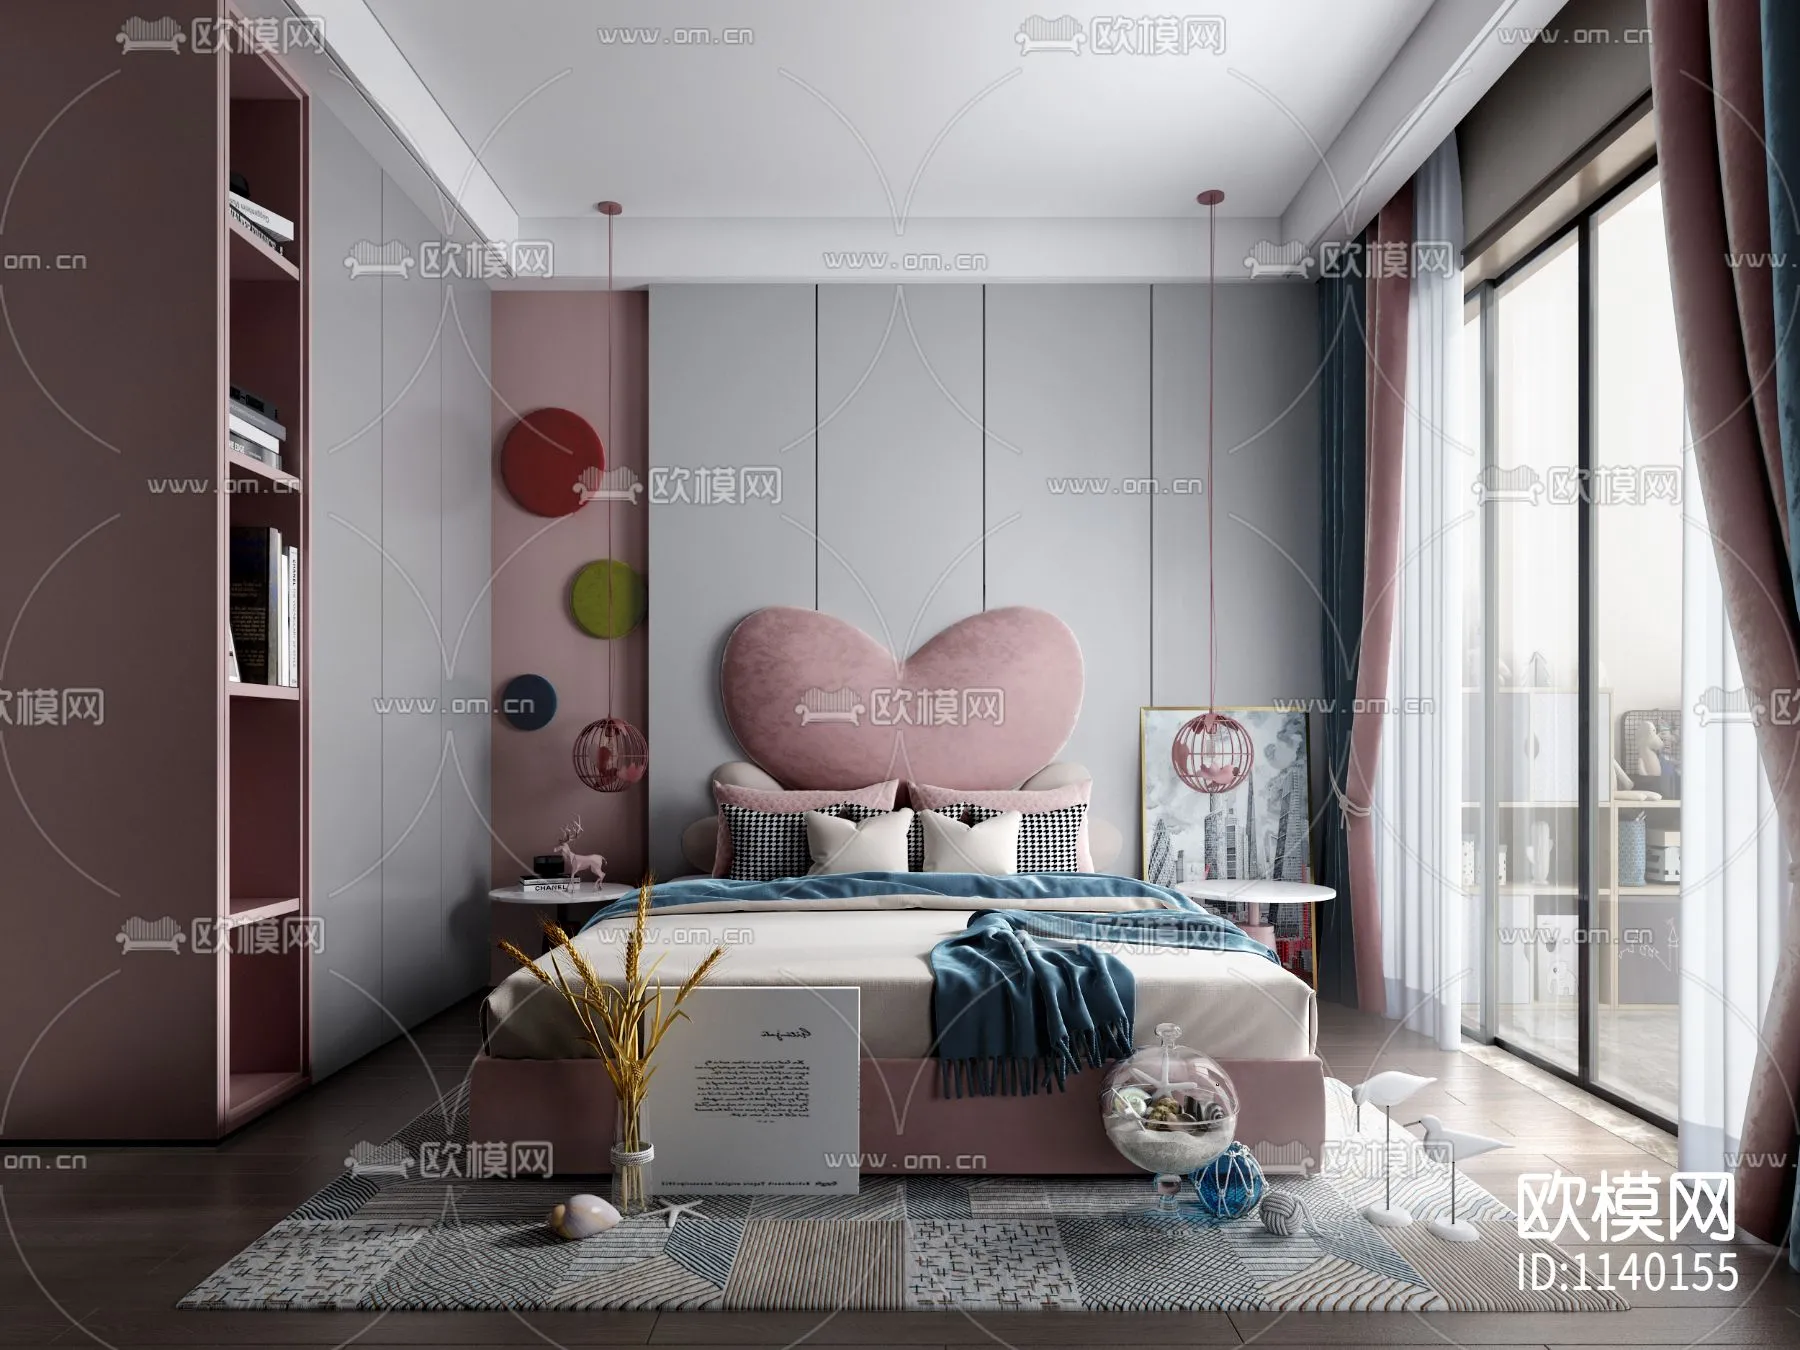 Children Room 3D Scenes – 0310